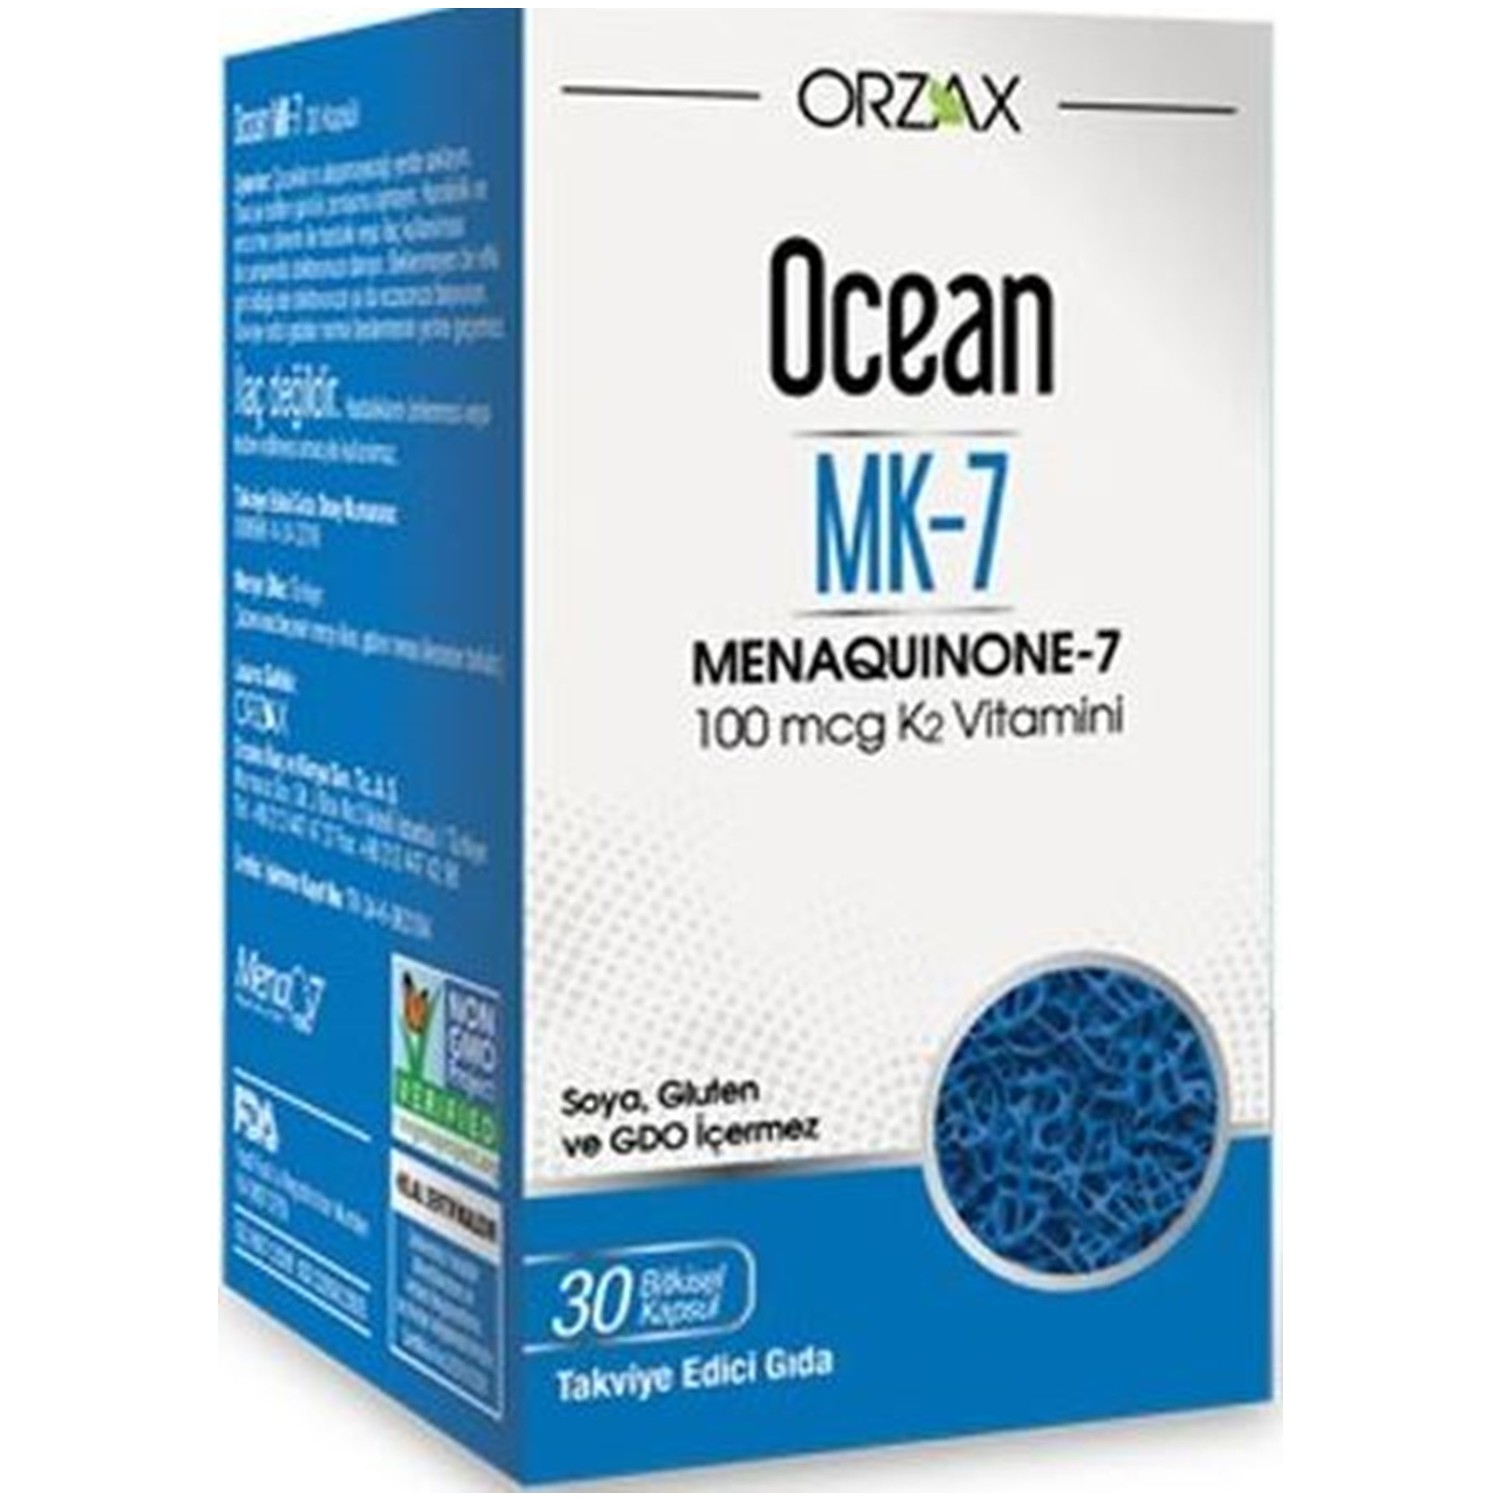 Пищевая добавка Orzax Ocean Mk-7 Vitamin К2 100 мкг, 30 капсул now foods витамин k2 100 мкг 100 растительных капсул